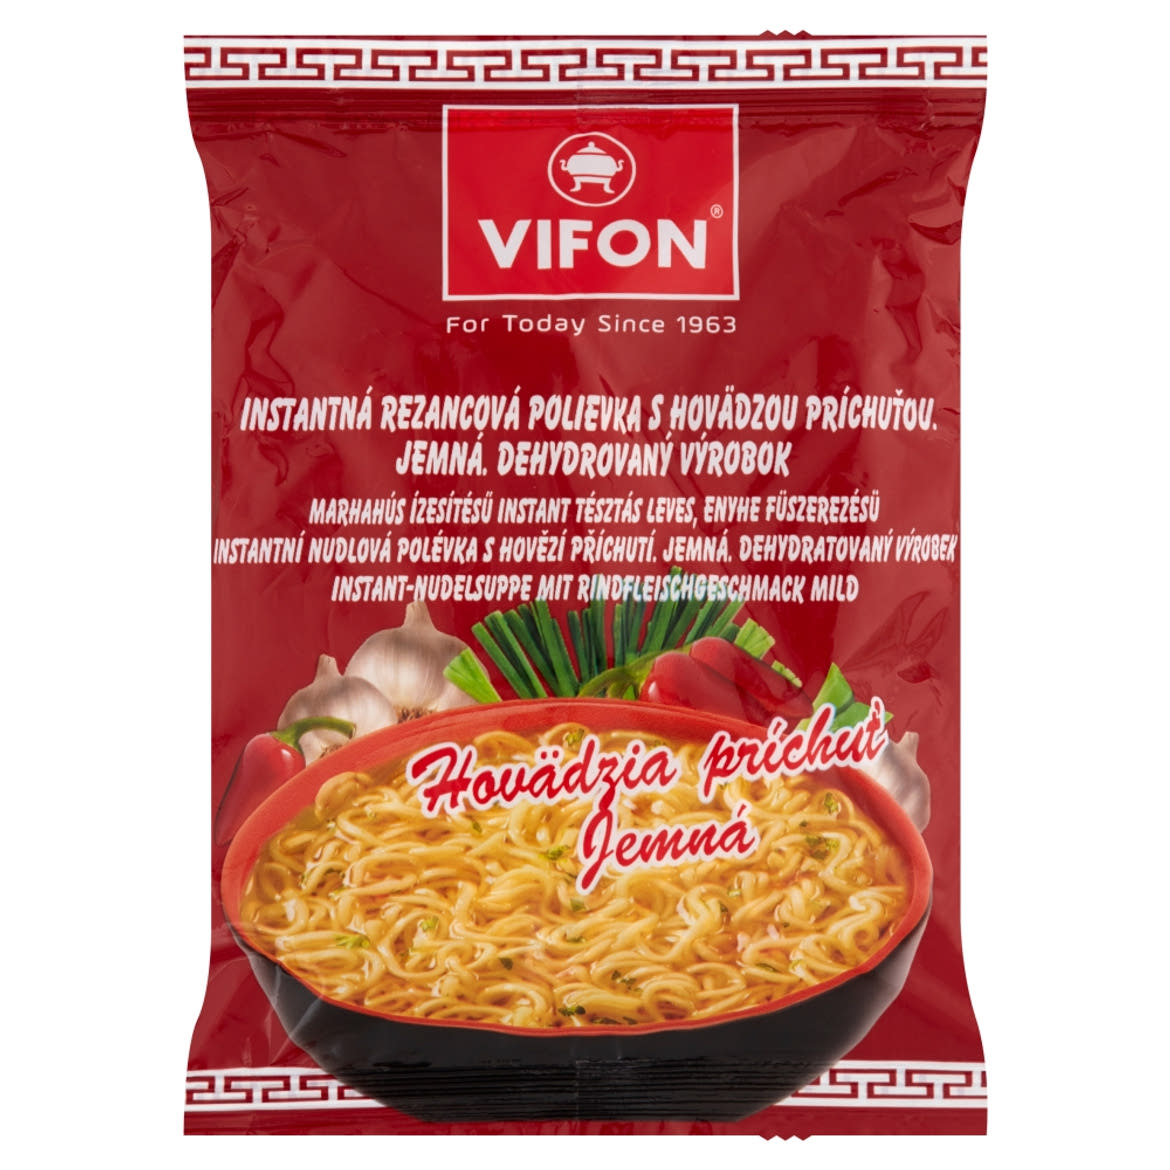 Vifon enyhe fűszerezésű, marhahús ízesítésű instant tésztás leves